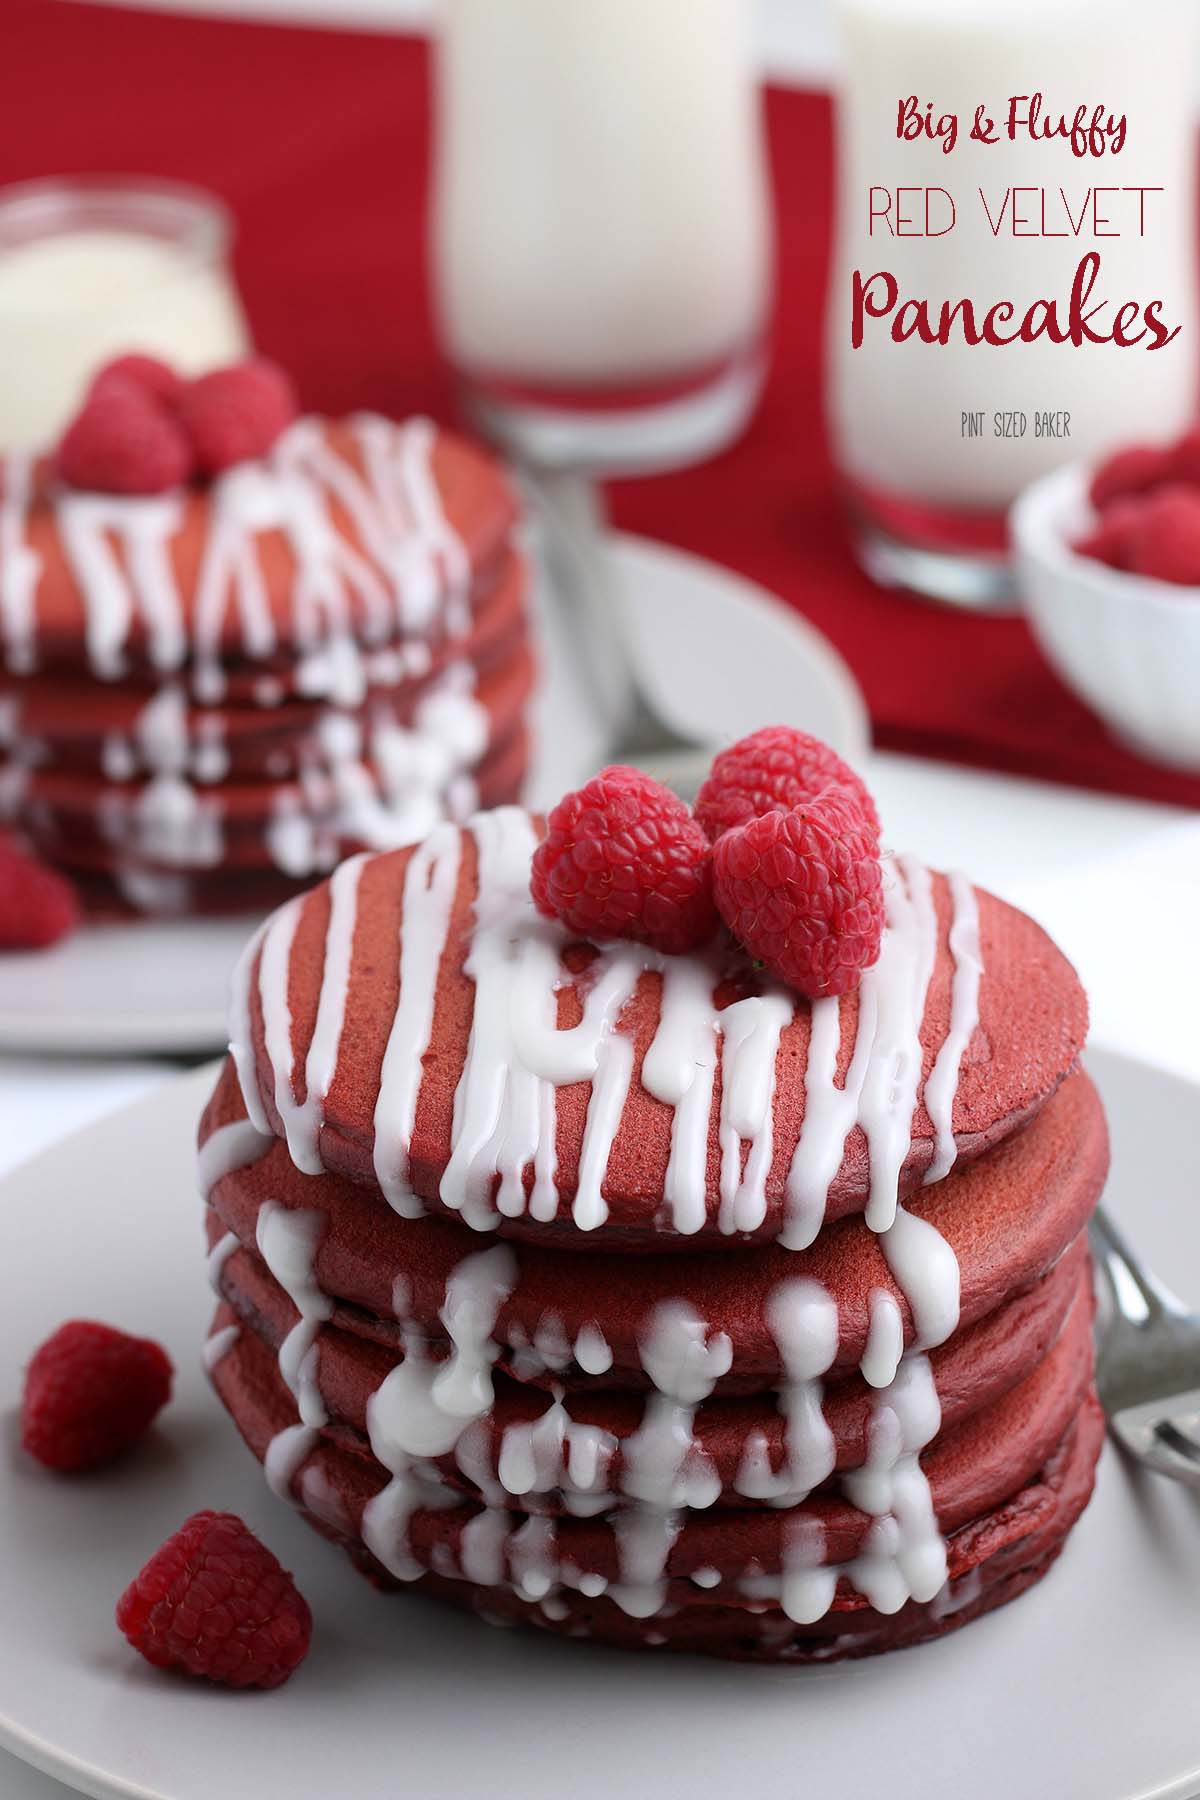 Big and Fluffy Red Velvet Pancake Recipe  Pint Sized Baker